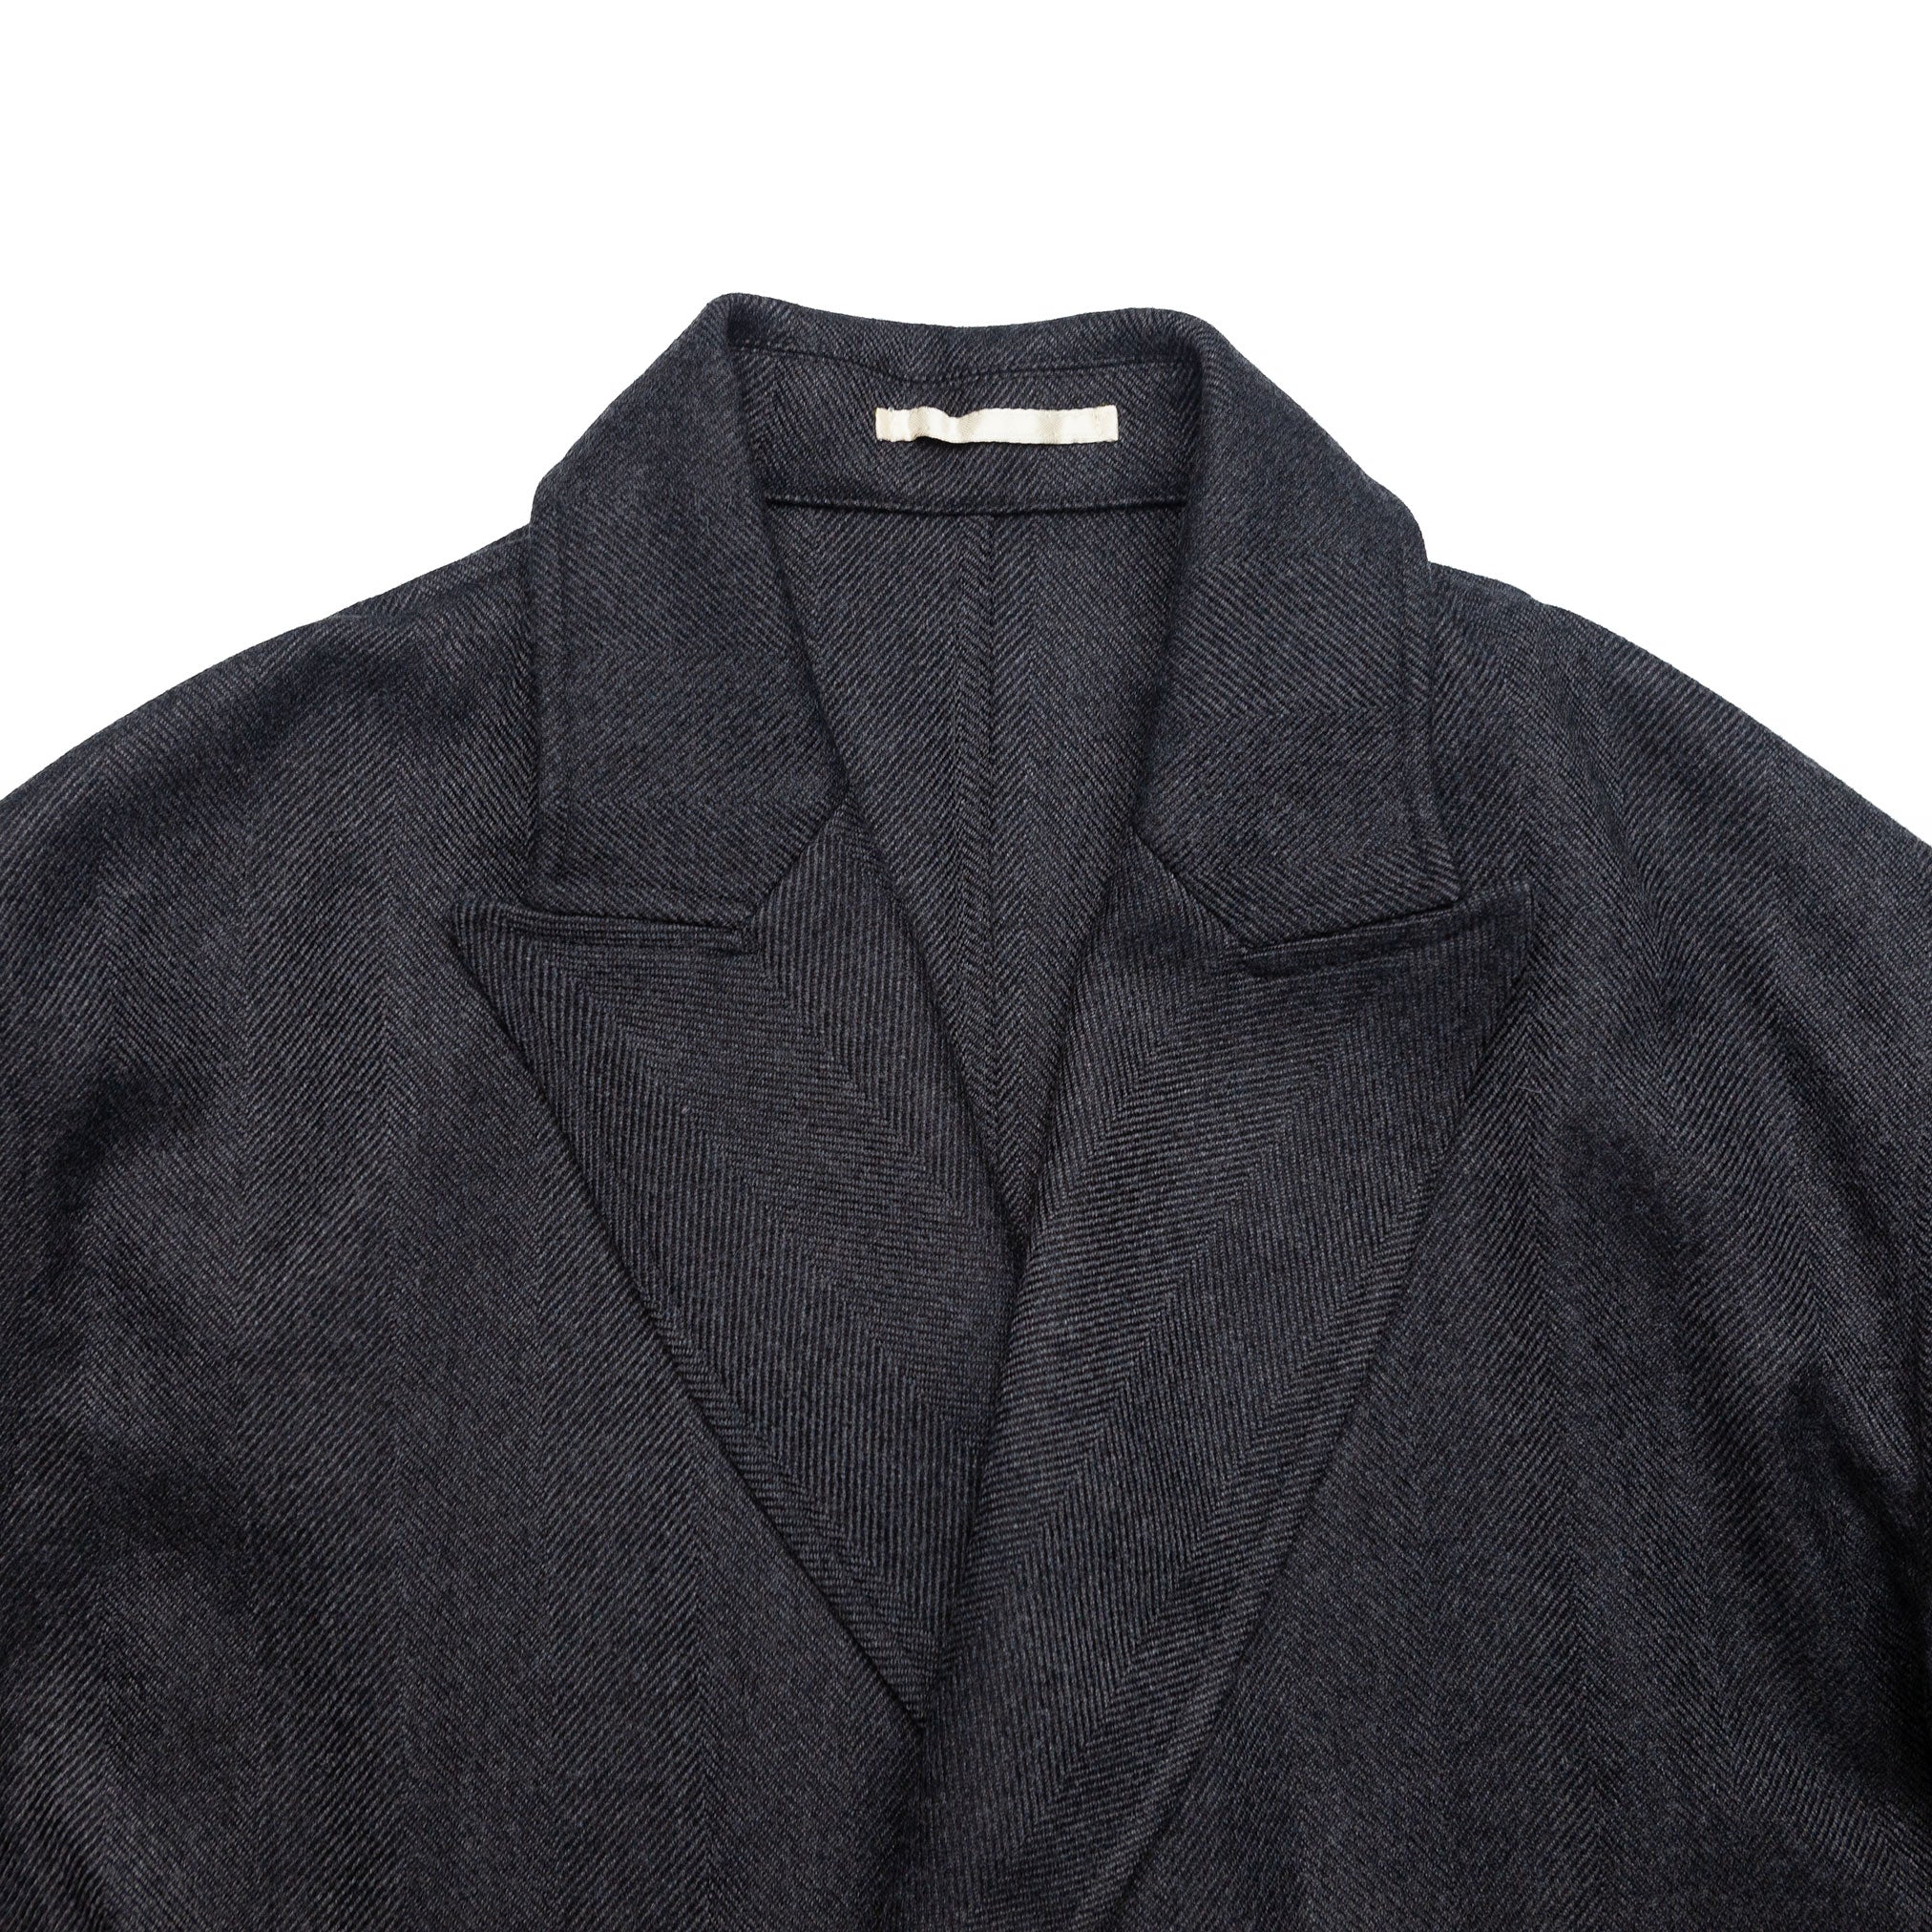 The Charles Overcoat in Charcoal Herringbone Wool